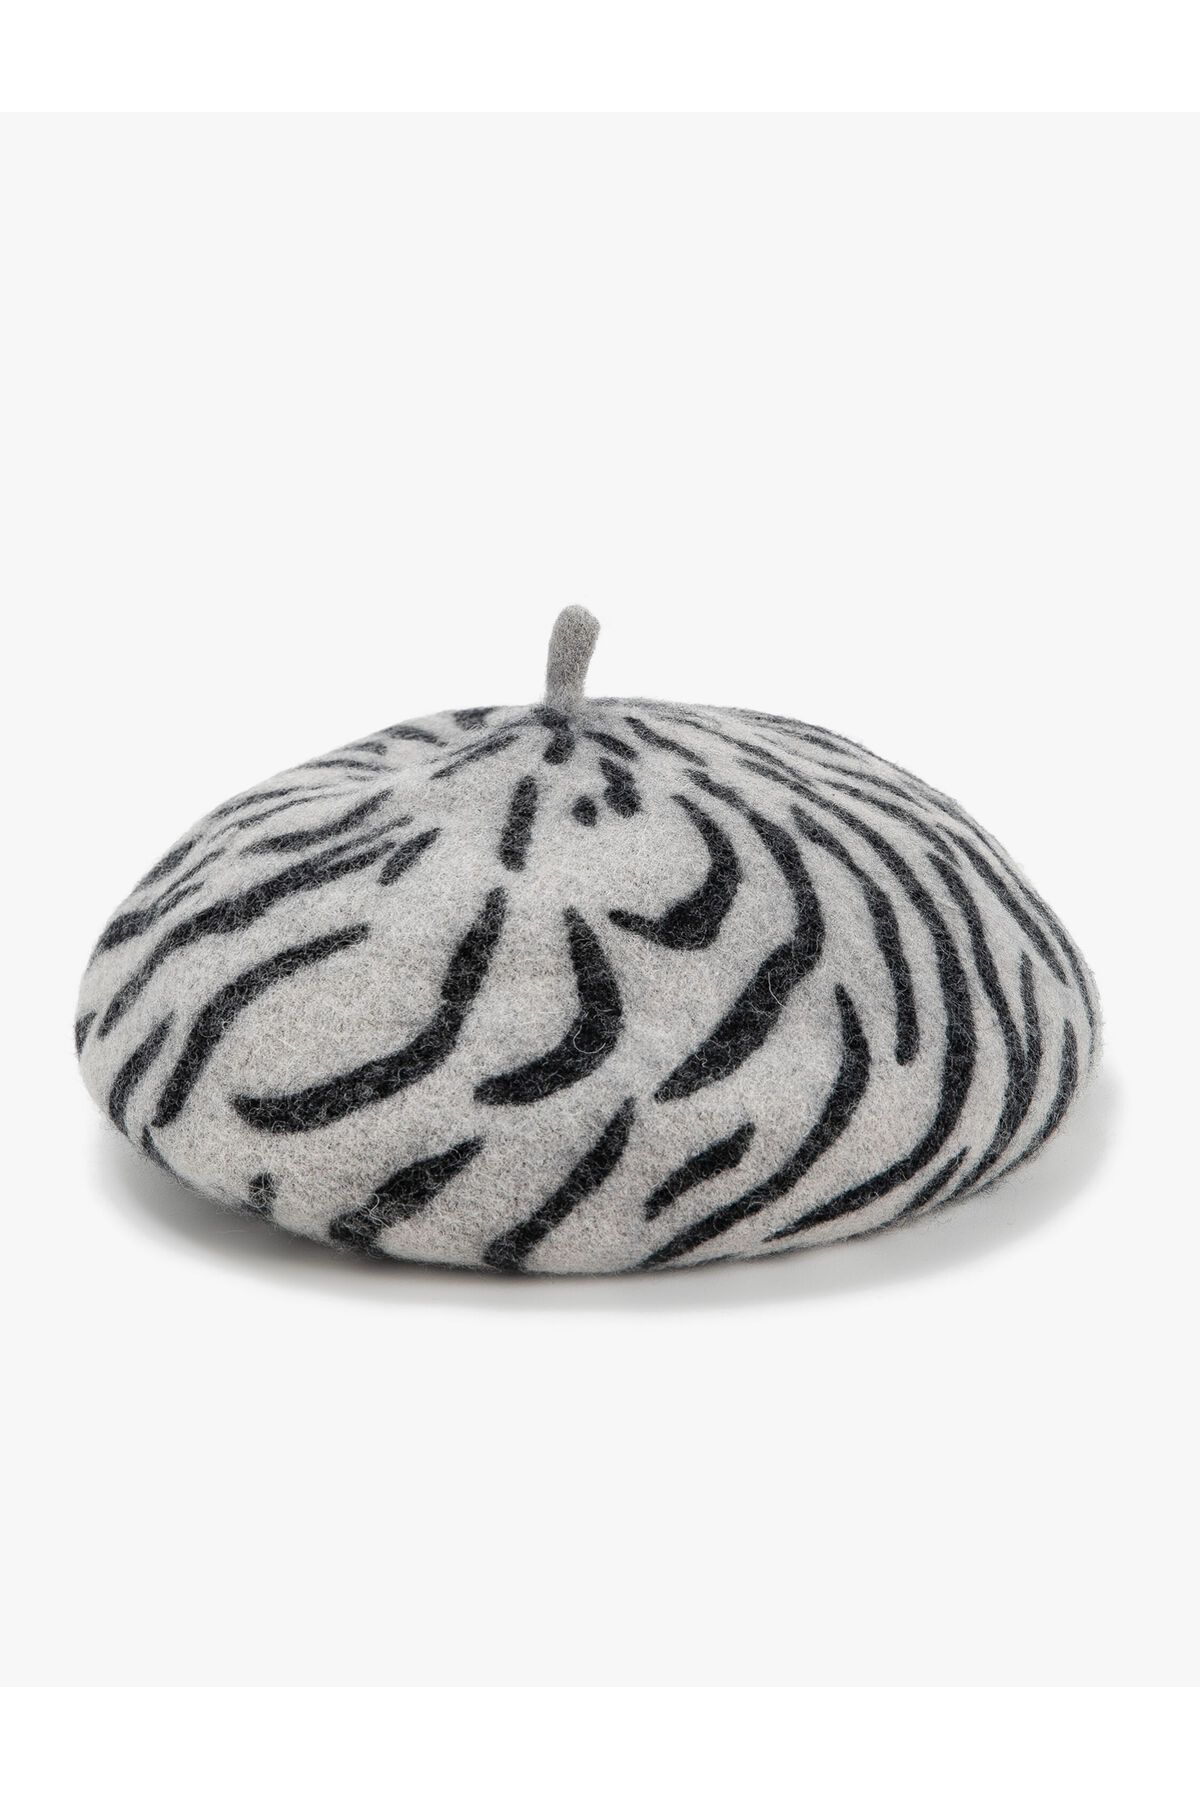 Koton Ressam Yünlü Şapka Yumuşak Dokulu Zebra Desenli